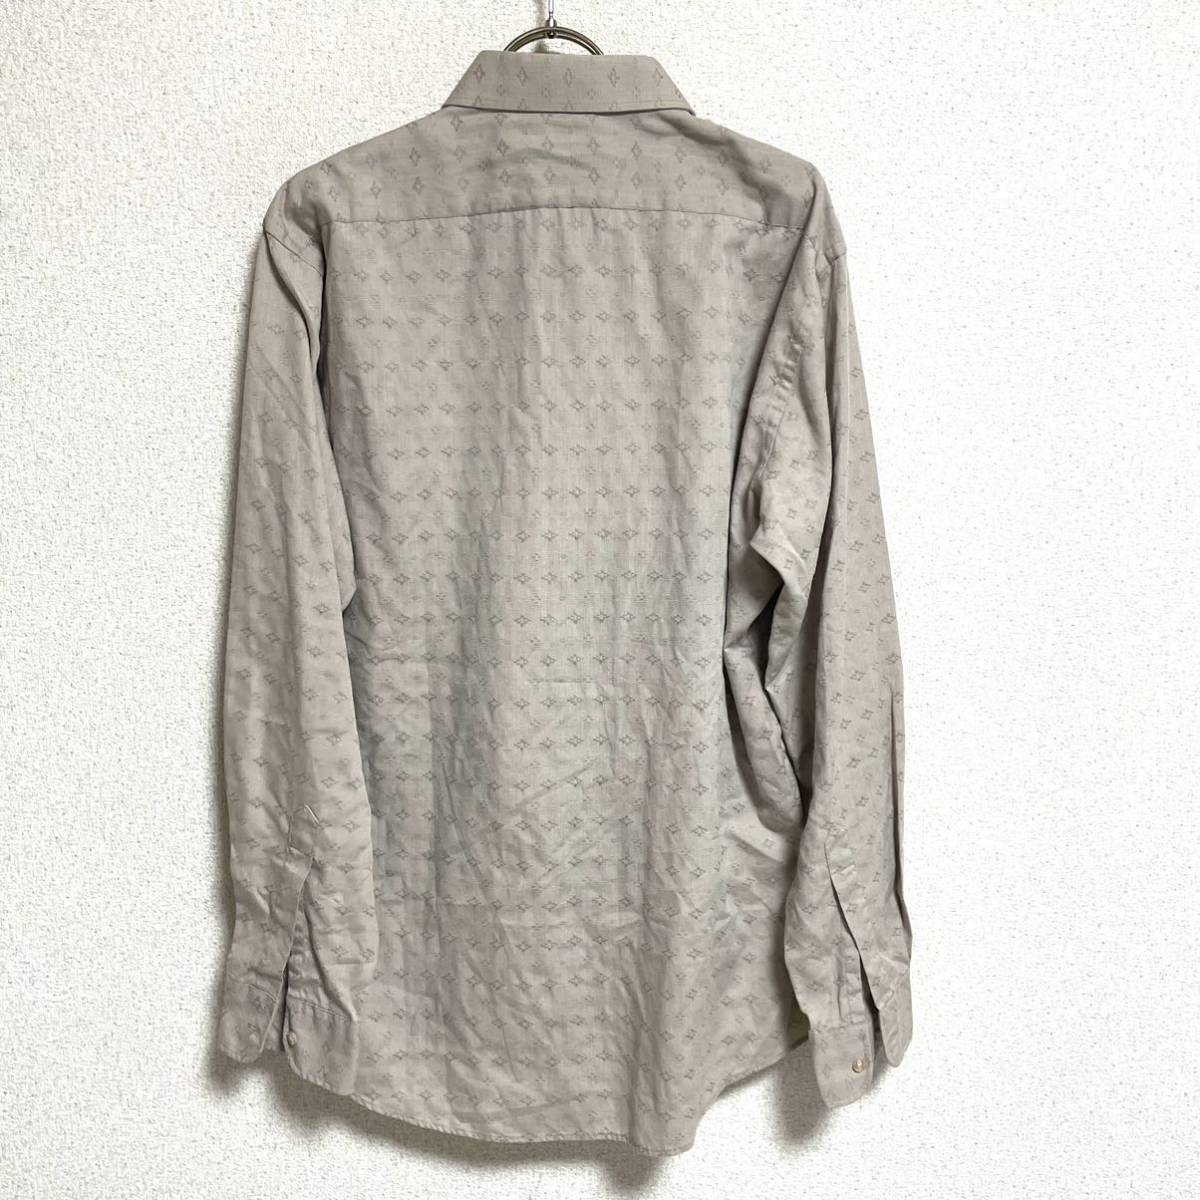  Yves Saint-Laurent Yves Saint Laurent рубашка с длинным рукавом длинный рукав рубашка общий рисунок серый бежевый мужской .. размер L соответствует *BH